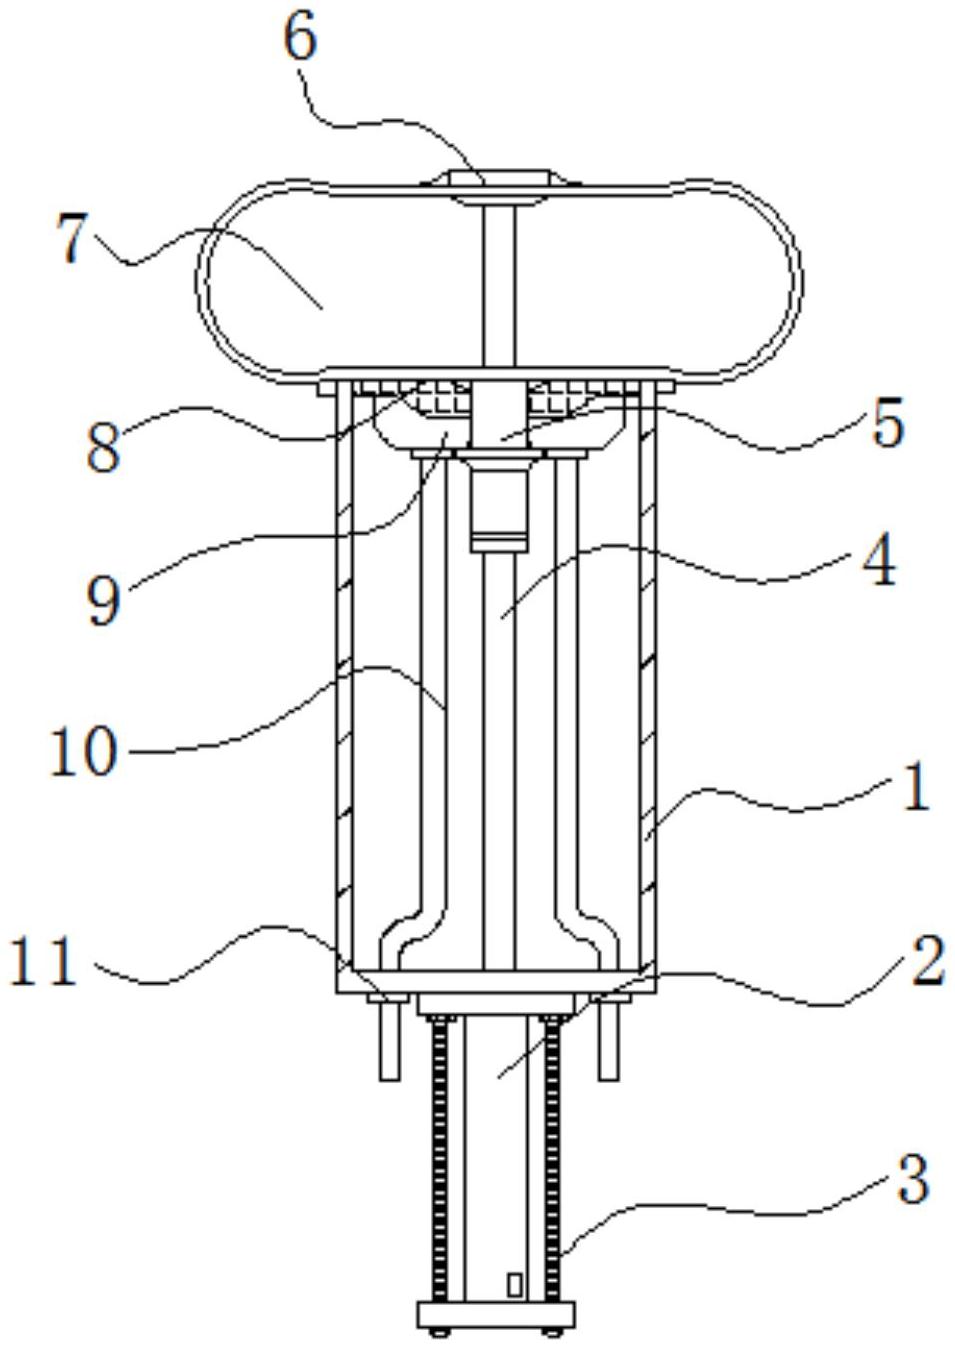 一种轮胎硫化机的胶囊操纵机构专利图